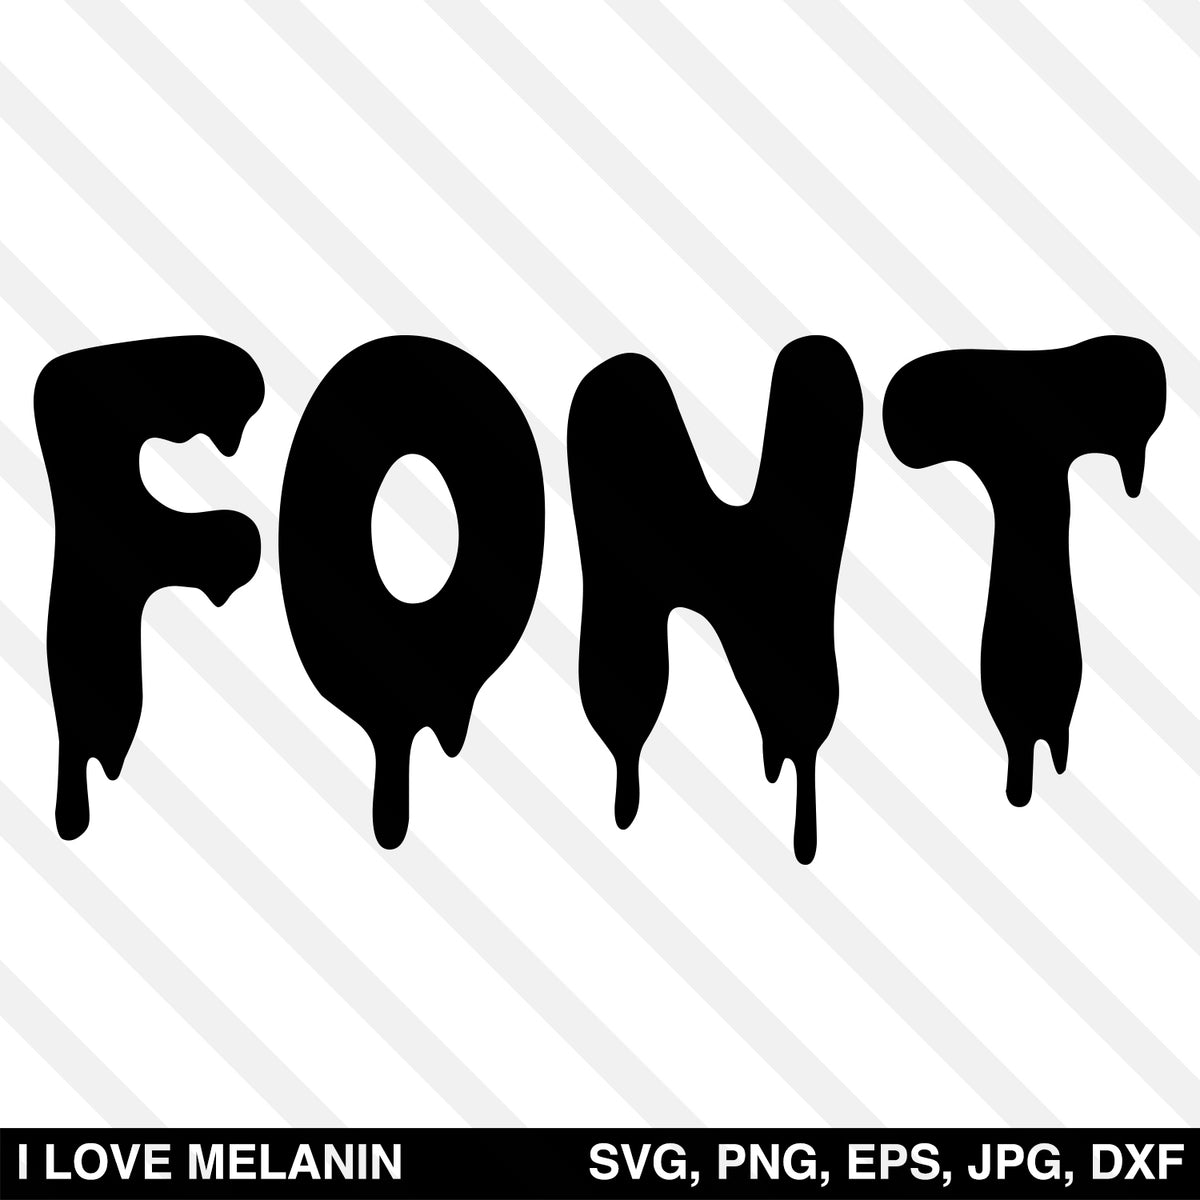 Dripping Font SVG - I Love Melanin